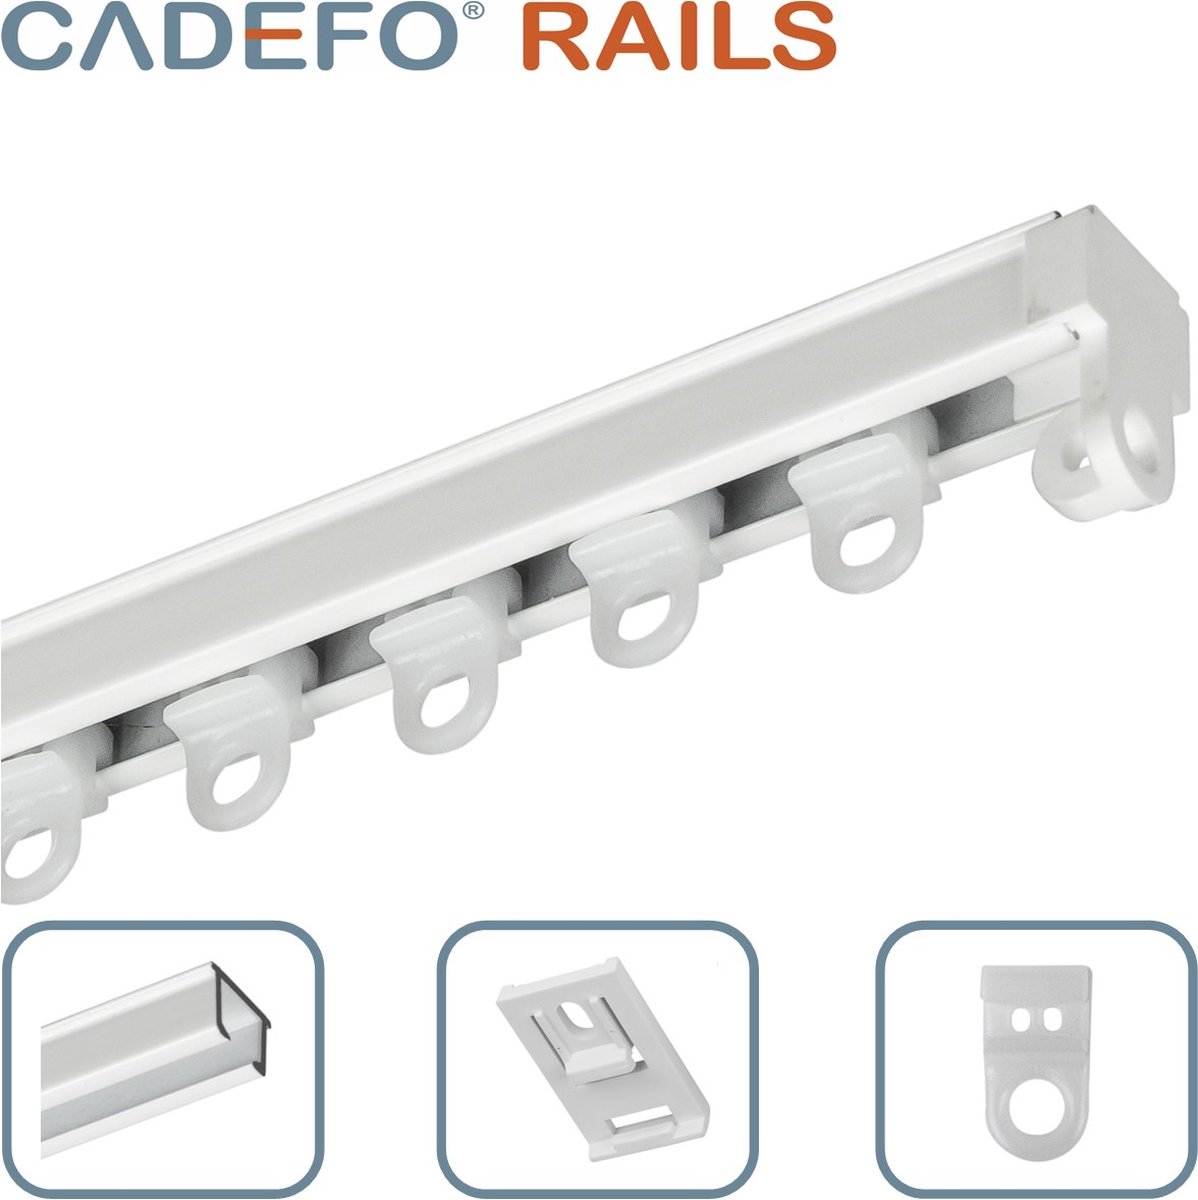 CADEFO RAILS (351 - 400 cm) Gordijnrails - Compleet op maat! - UIT 1 STUK - Leverbaar tot 6 meter - Plafondbevestiging - Lengte 389 cm